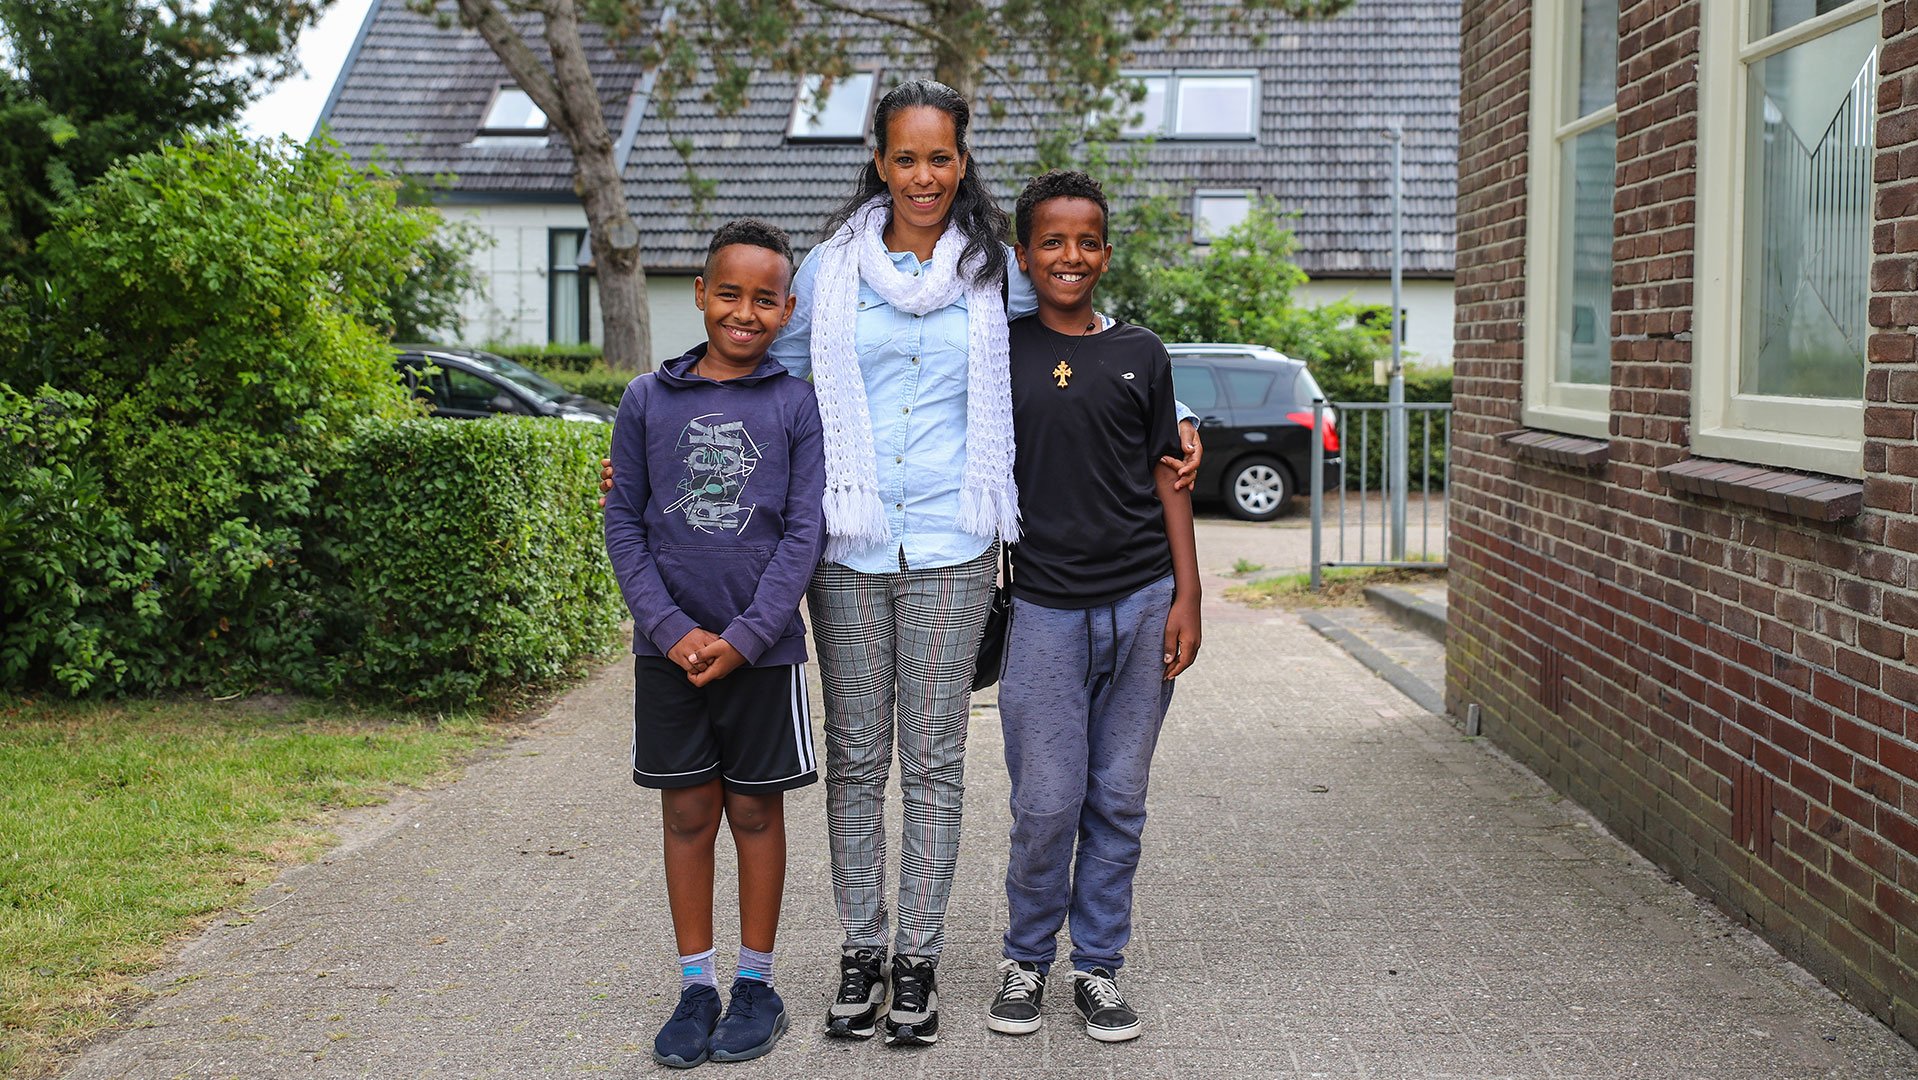 War Child TeamUp helpt gevluchte families in Nederland